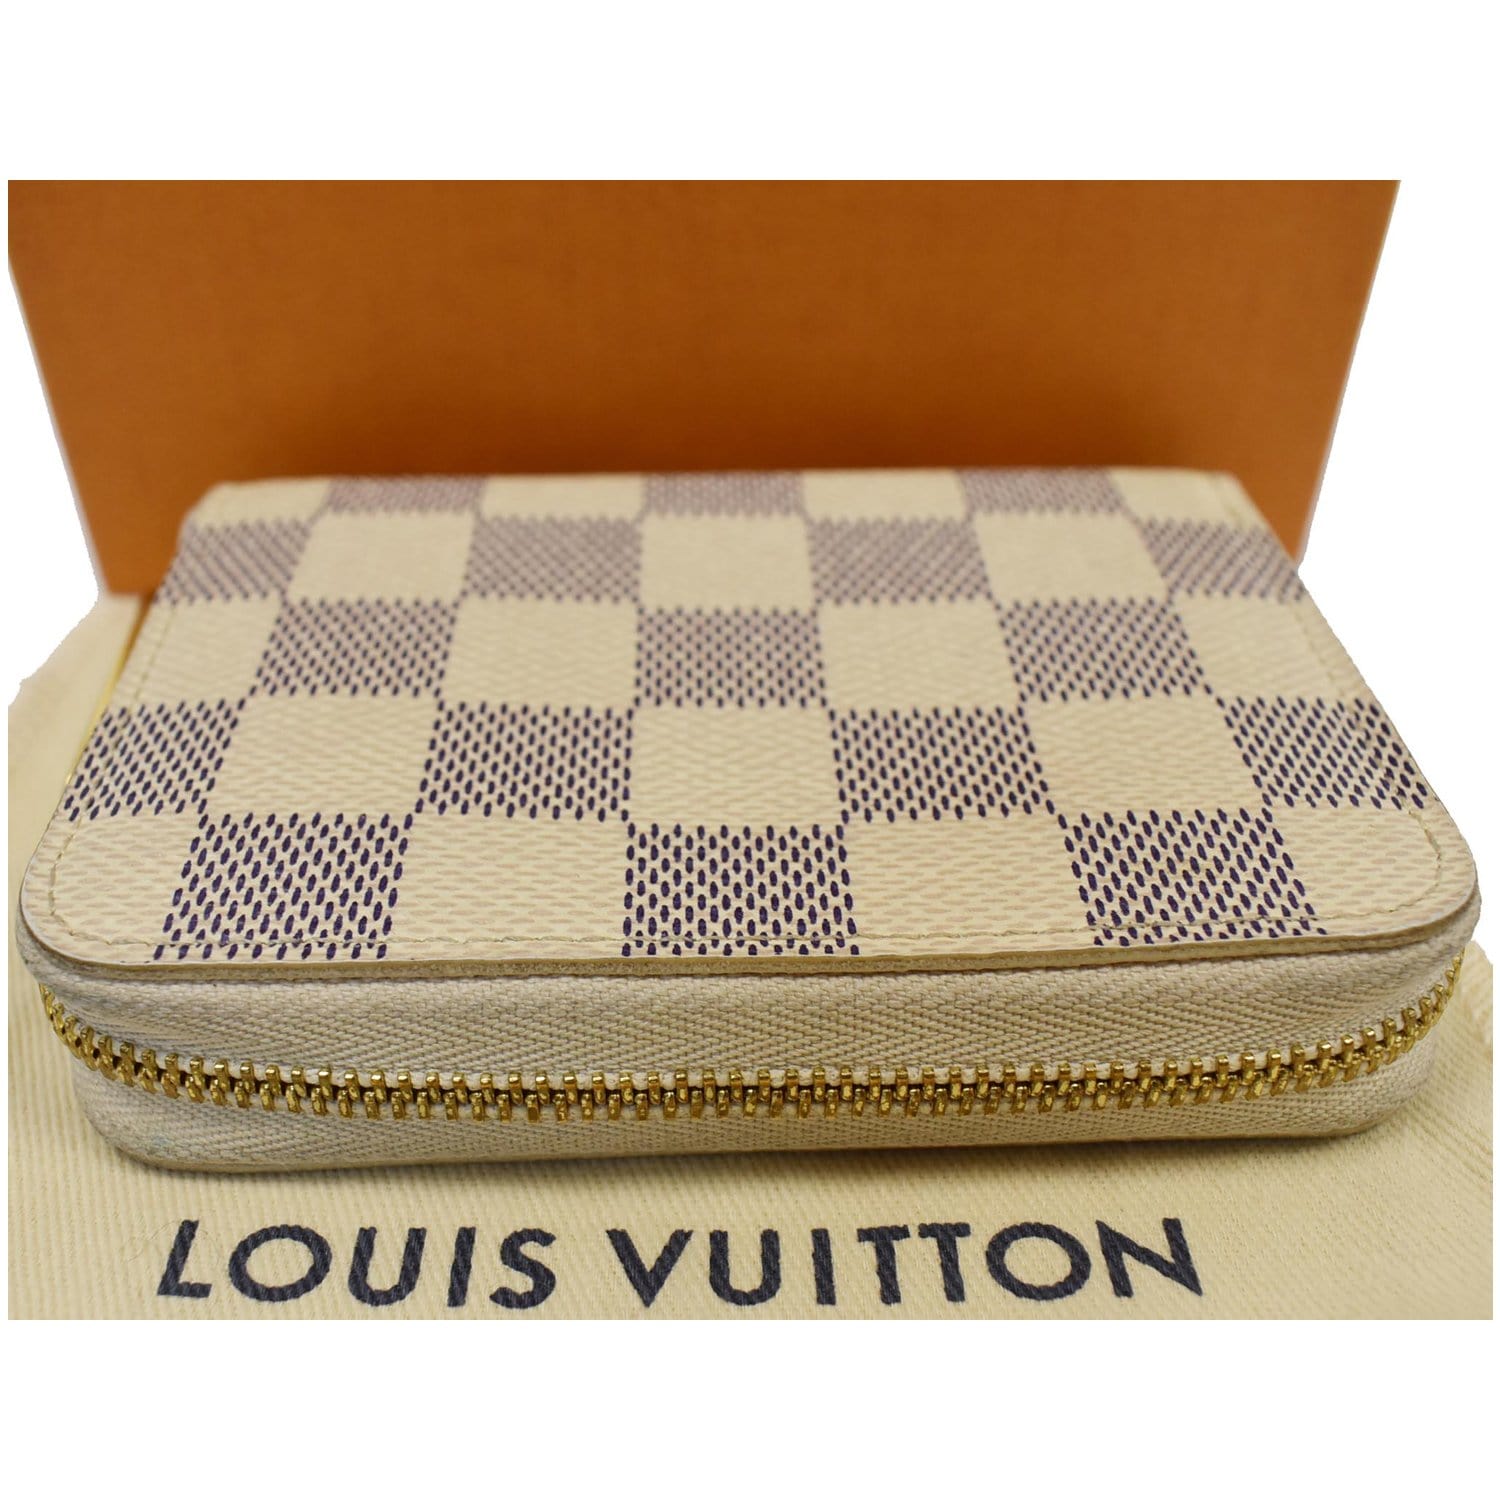 Authentic Louis Vuitton Damier Azur Zippy Coin Purse